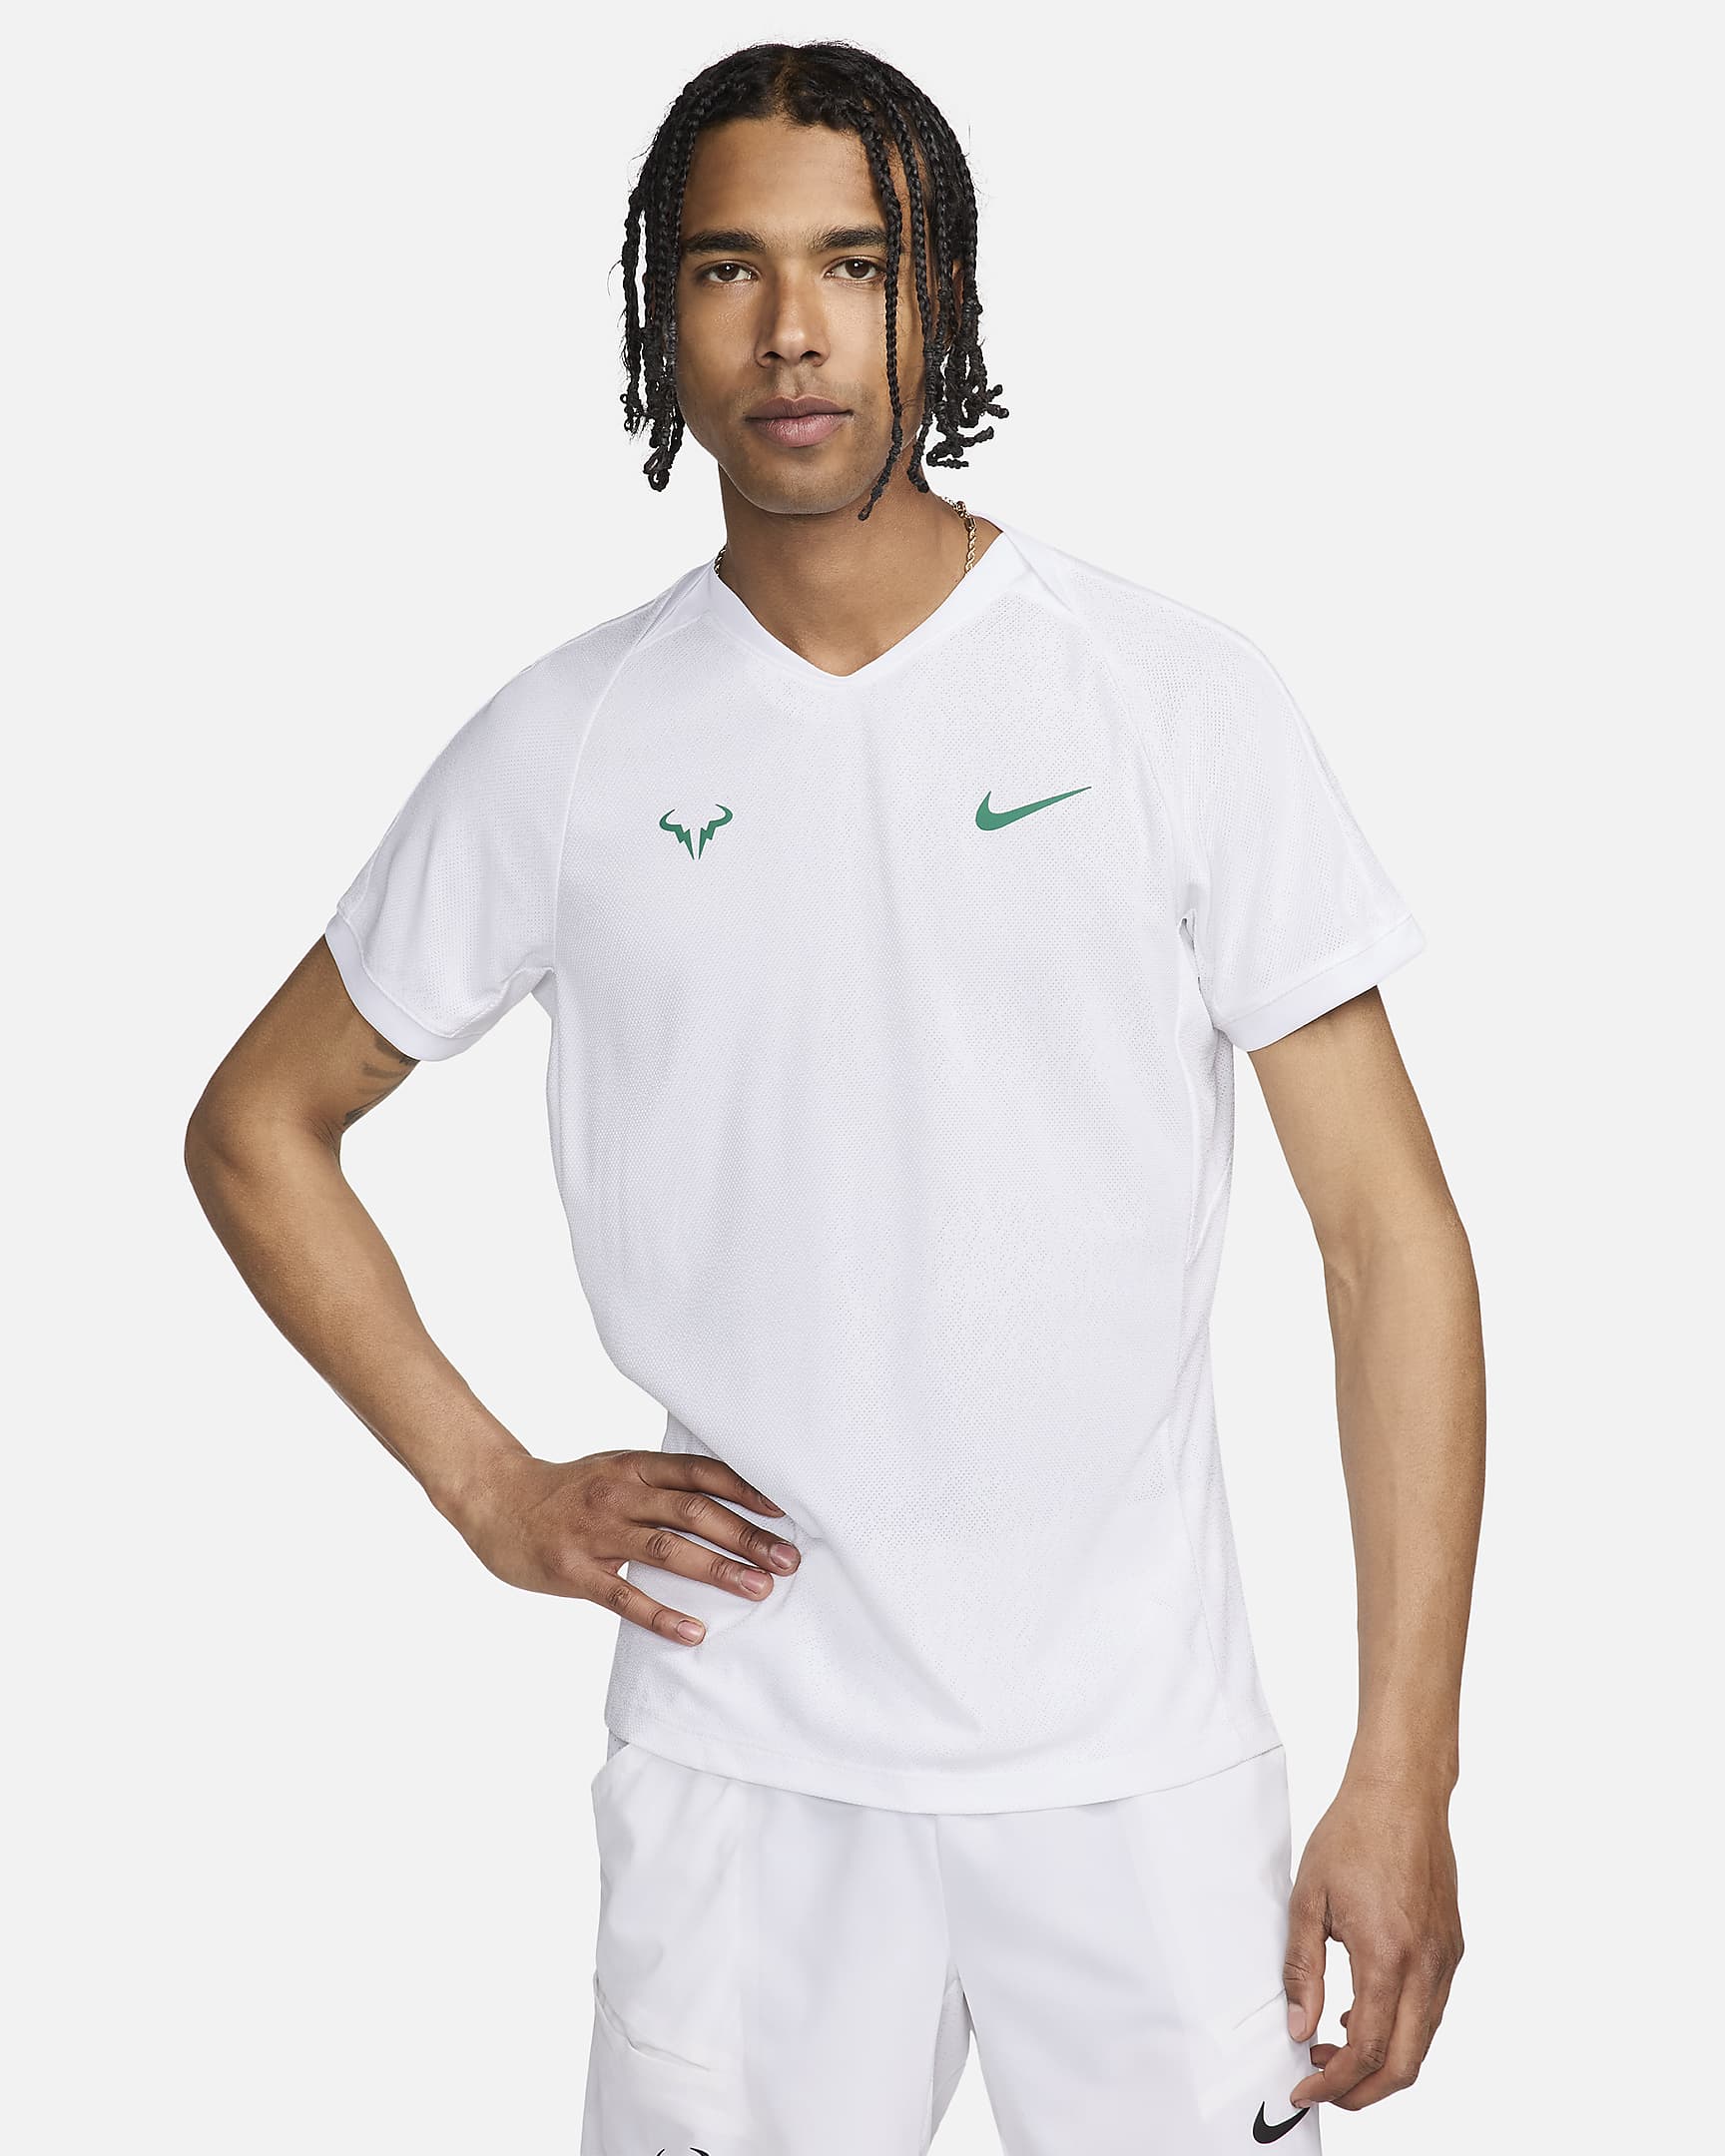 rafa-mens-dri-fit-adv-short-sleeve-tennis-top-l5VSMm.png